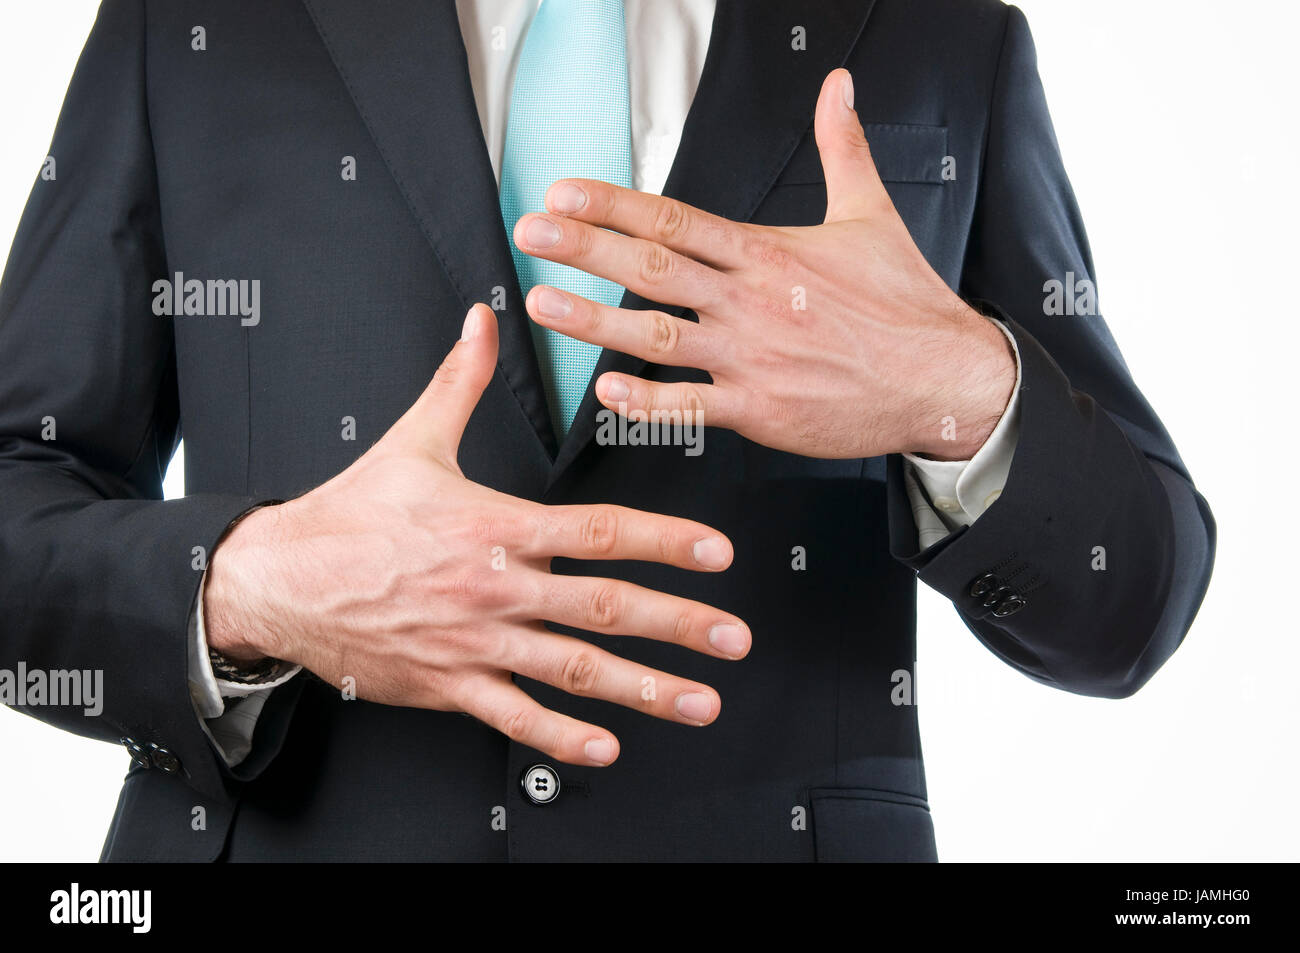 Brust-und-Bauch-Ansicht eines jungen Mannes im schwarzen Anzug mit vor sich gehaltenen Händen die '10' anzeigend (zehn dito) Foto Stock